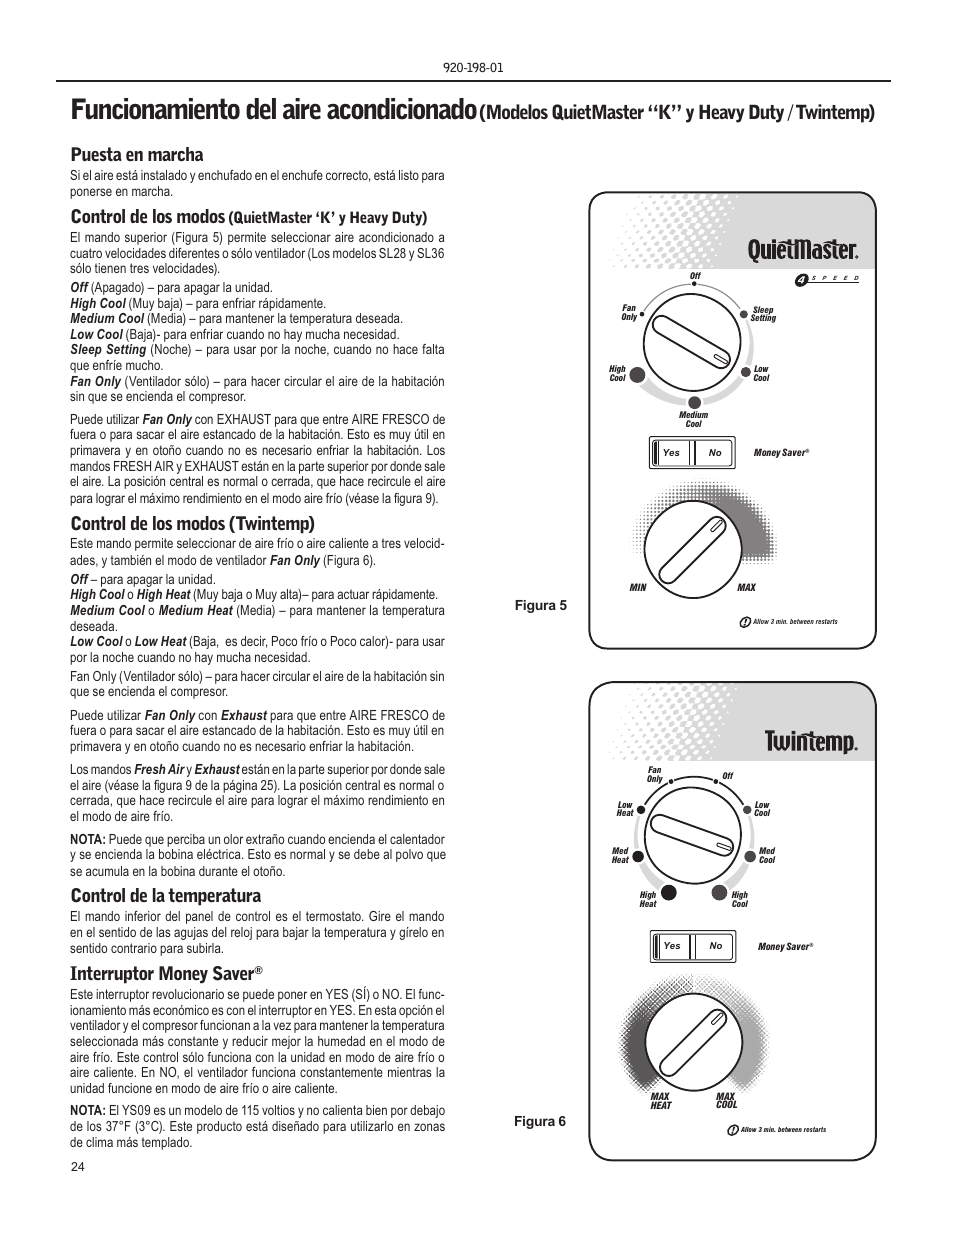 Funcionamiento del aire acondicionado, Modelos quietmaster “k” y heavy duty  / twintemp), Puesta en marcha | Friedrich KM18 User Manual | Page 24 / 56